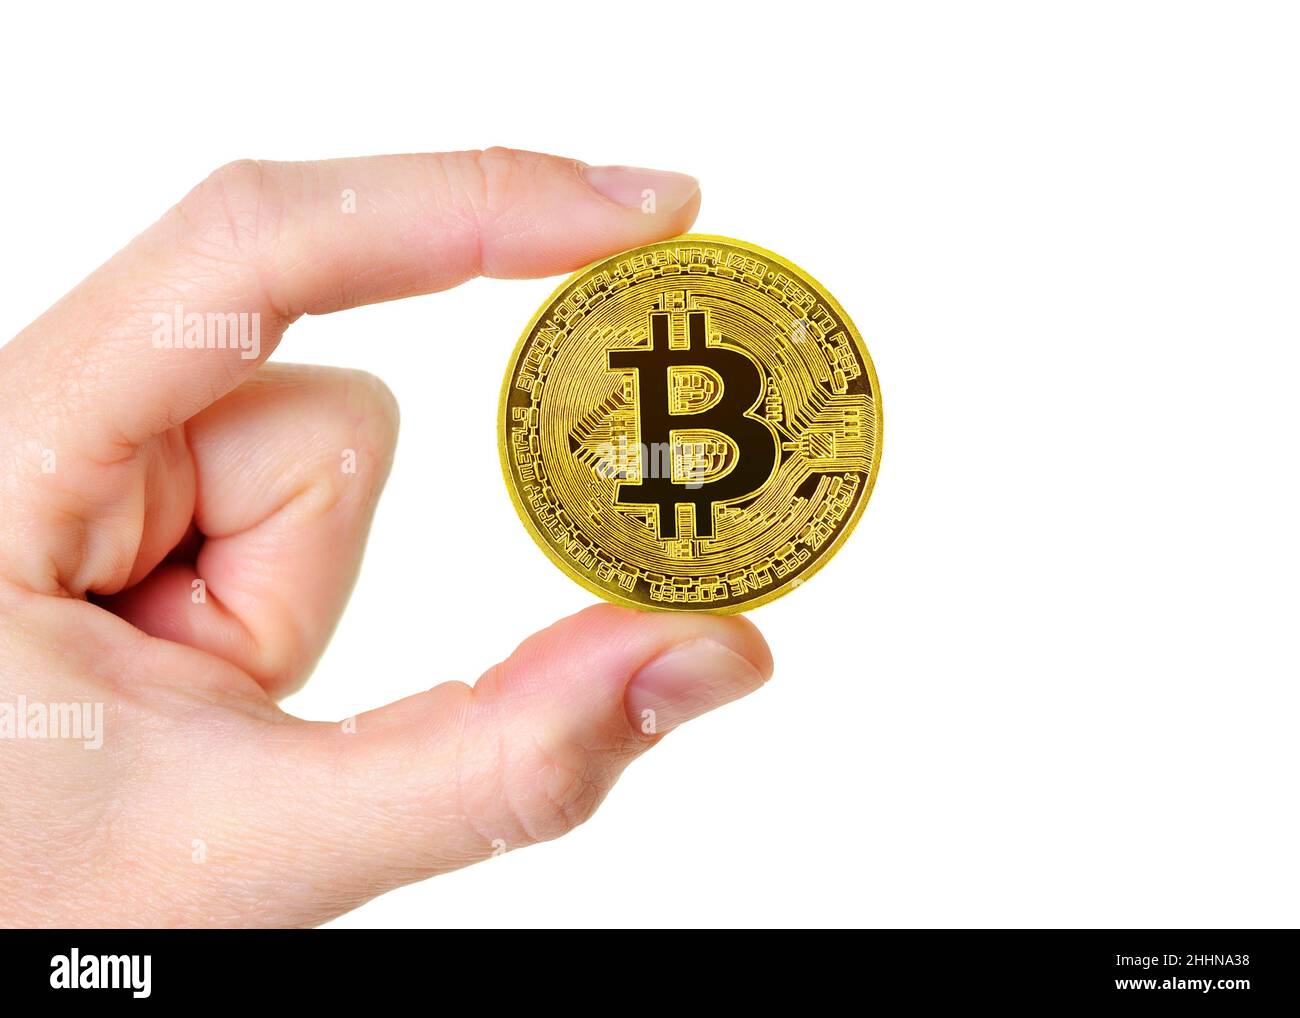 Bitcoin Cryptocurrency Coin wird vor einem weißen Hintergrund gehalten Stockfoto